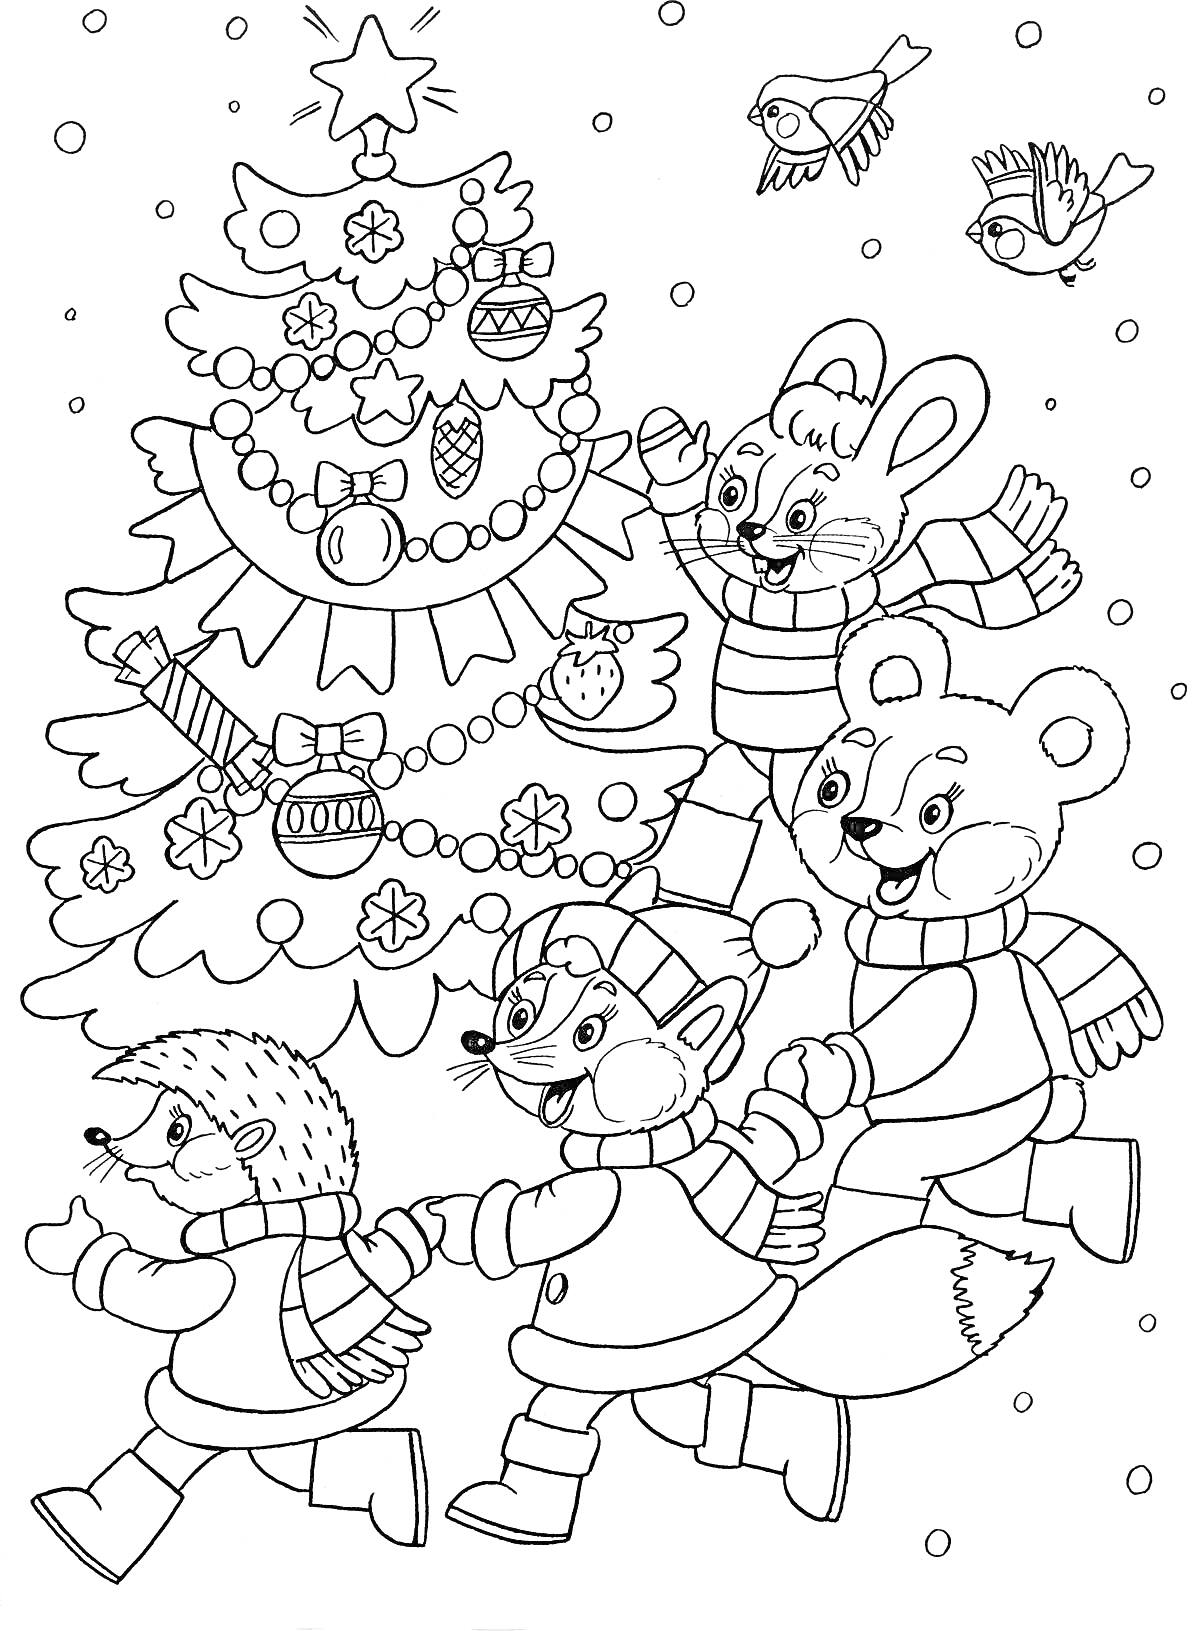 Елка, украшенная игрушками, вокруг которой водят хоровод еж, лиса, заяц и медведь в шарфиках и шапках, снежинки и птицы